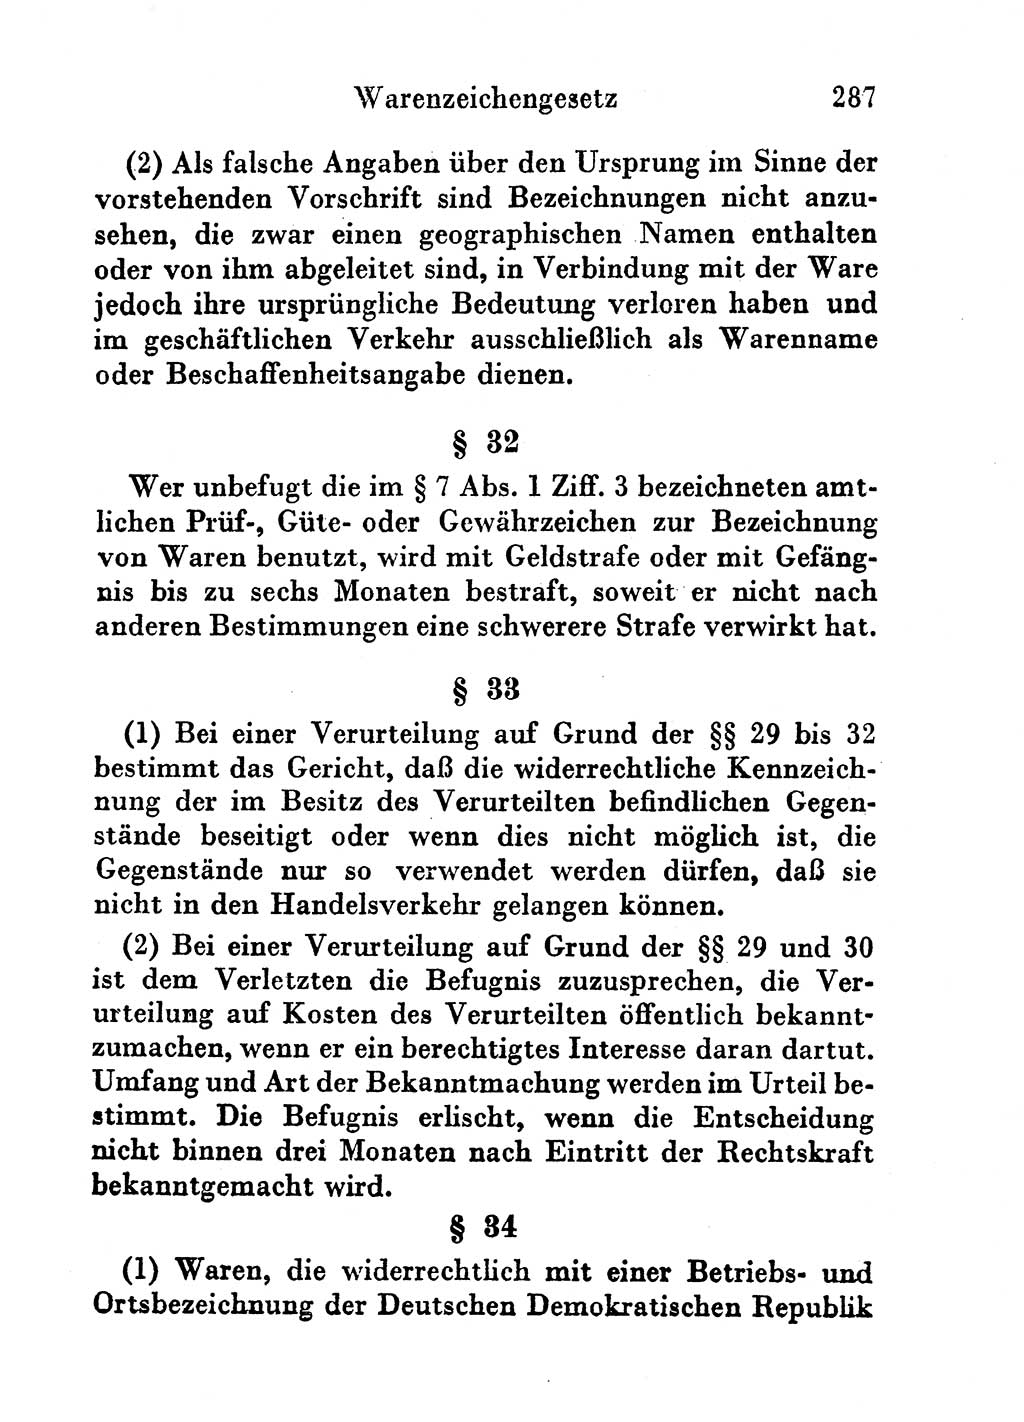 Strafgesetzbuch (StGB) und andere Strafgesetze [Deutsche Demokratische Republik (DDR)] 1956, Seite 287 (StGB Strafges. DDR 1956, S. 287)